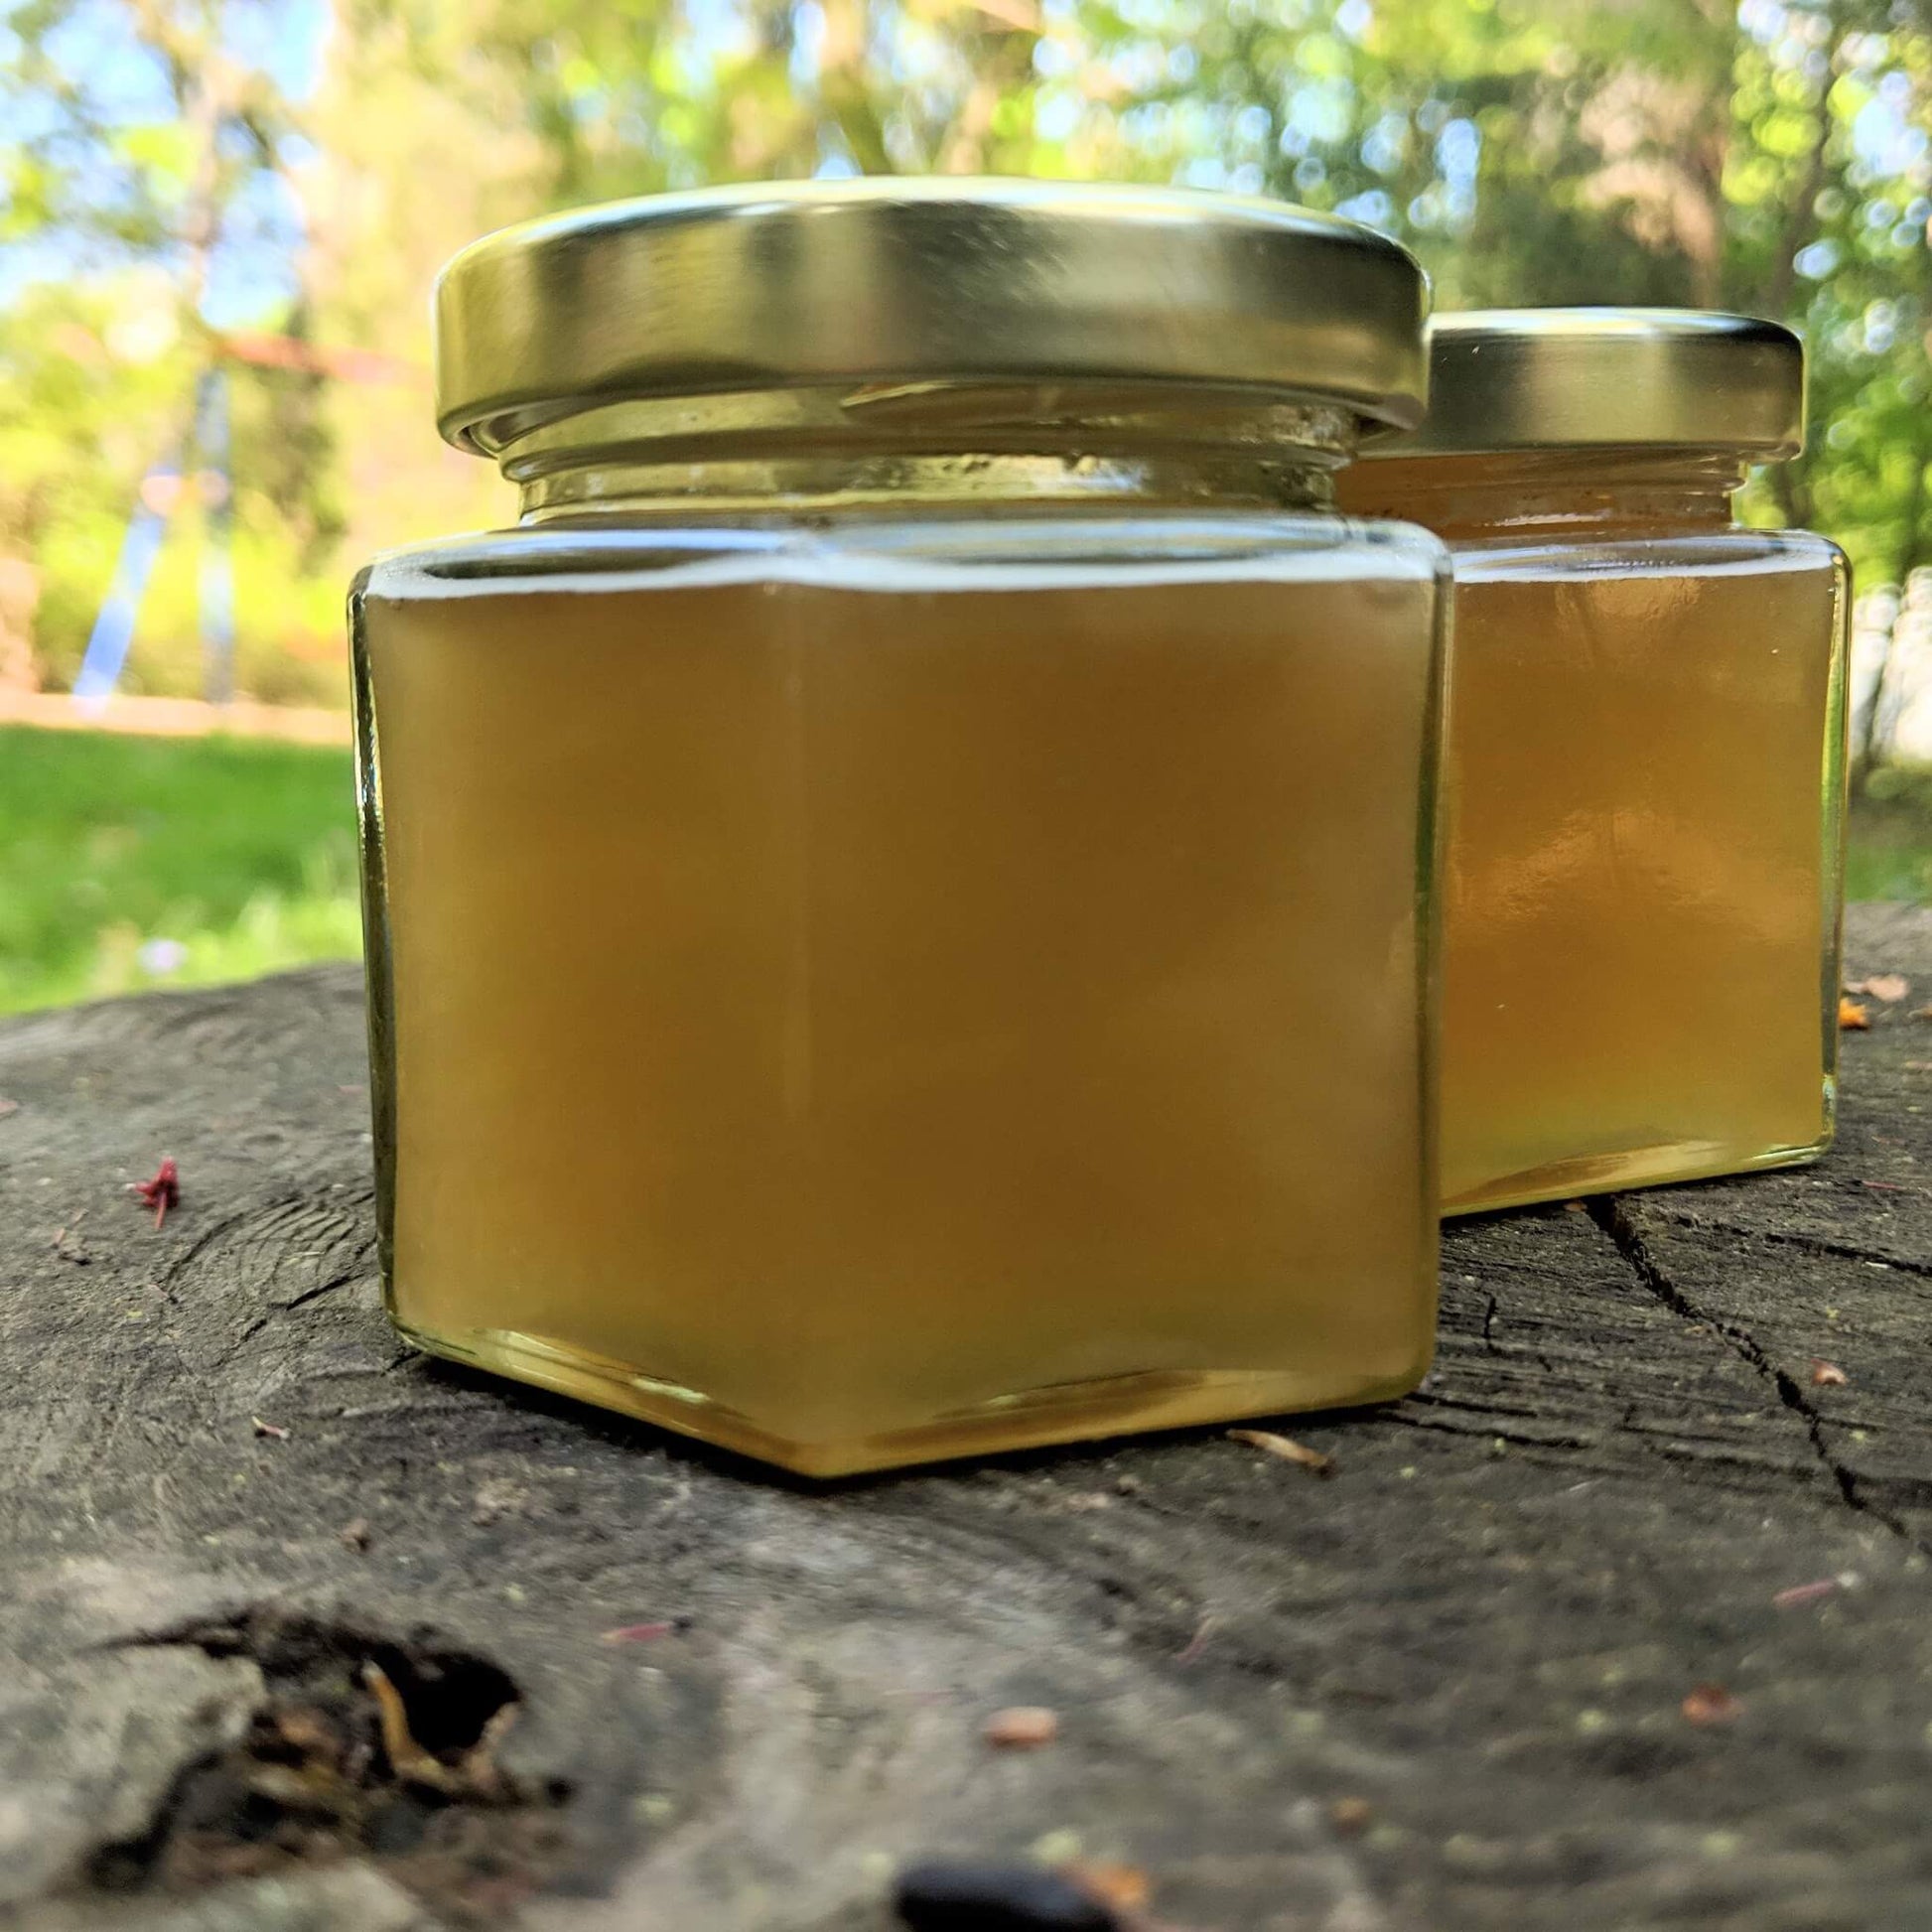 Jars of creamed honey on a tree stump.